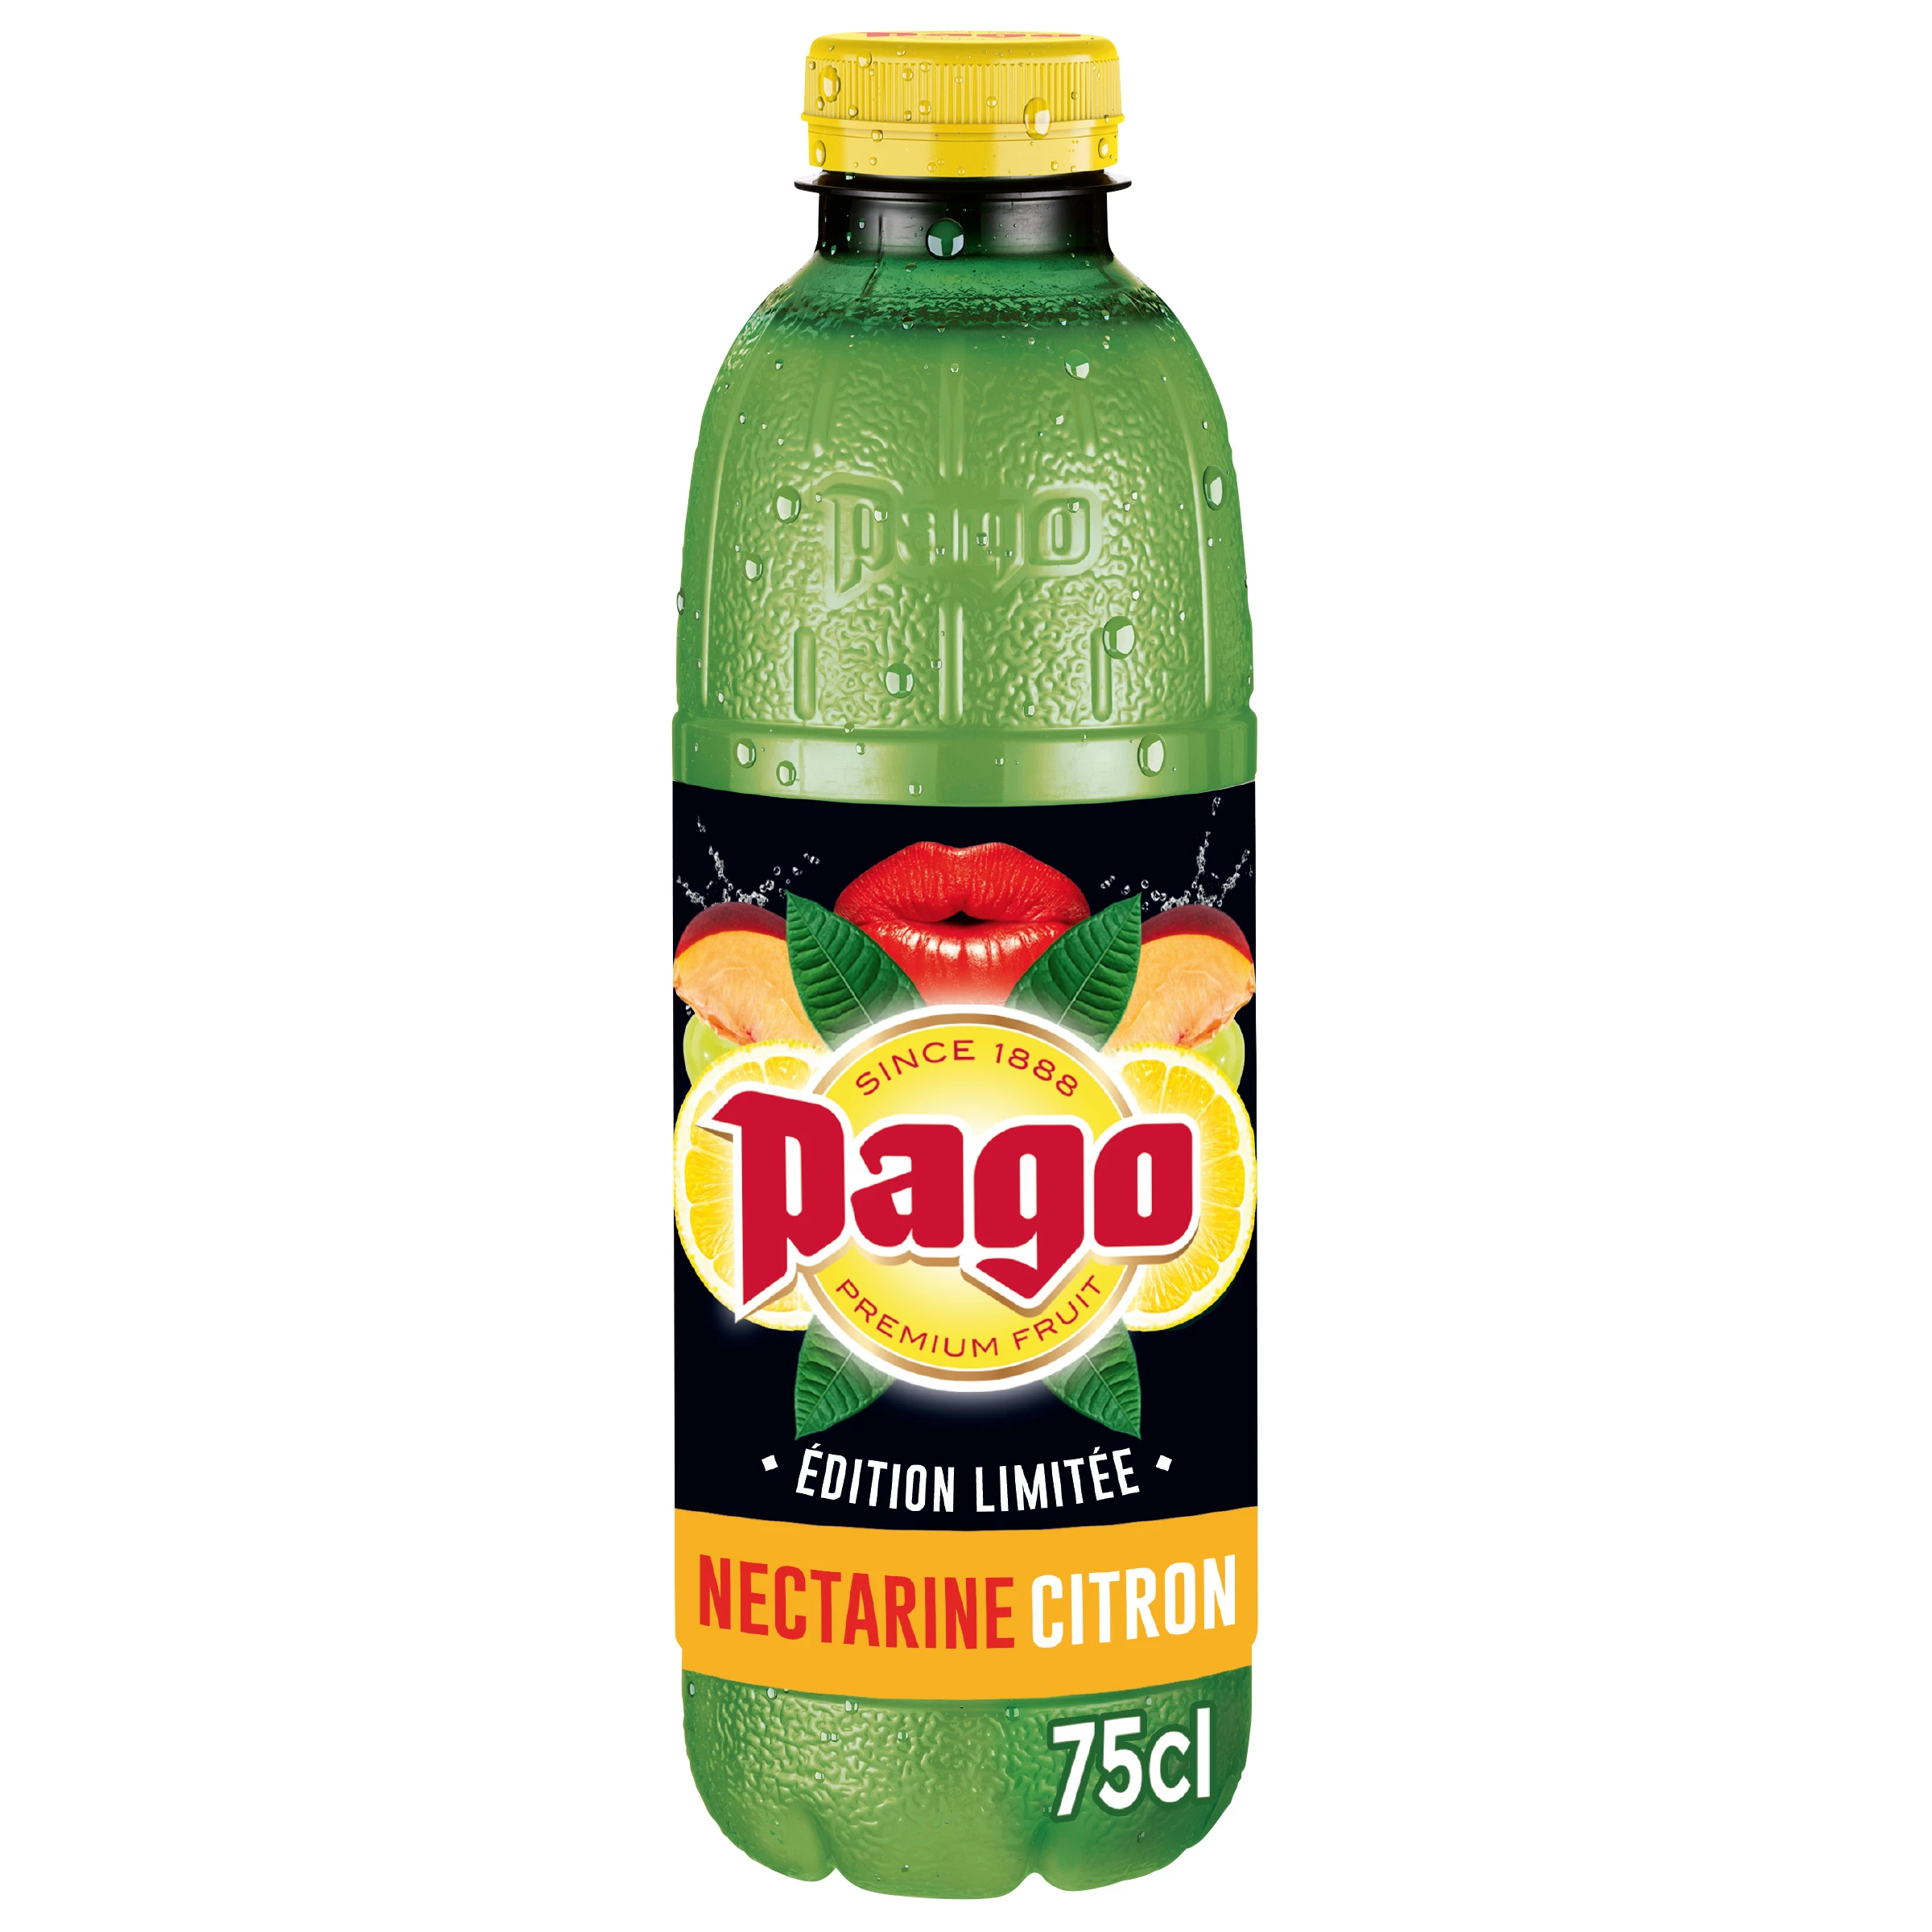 Limited edition lemon nectarine juice - PAGO